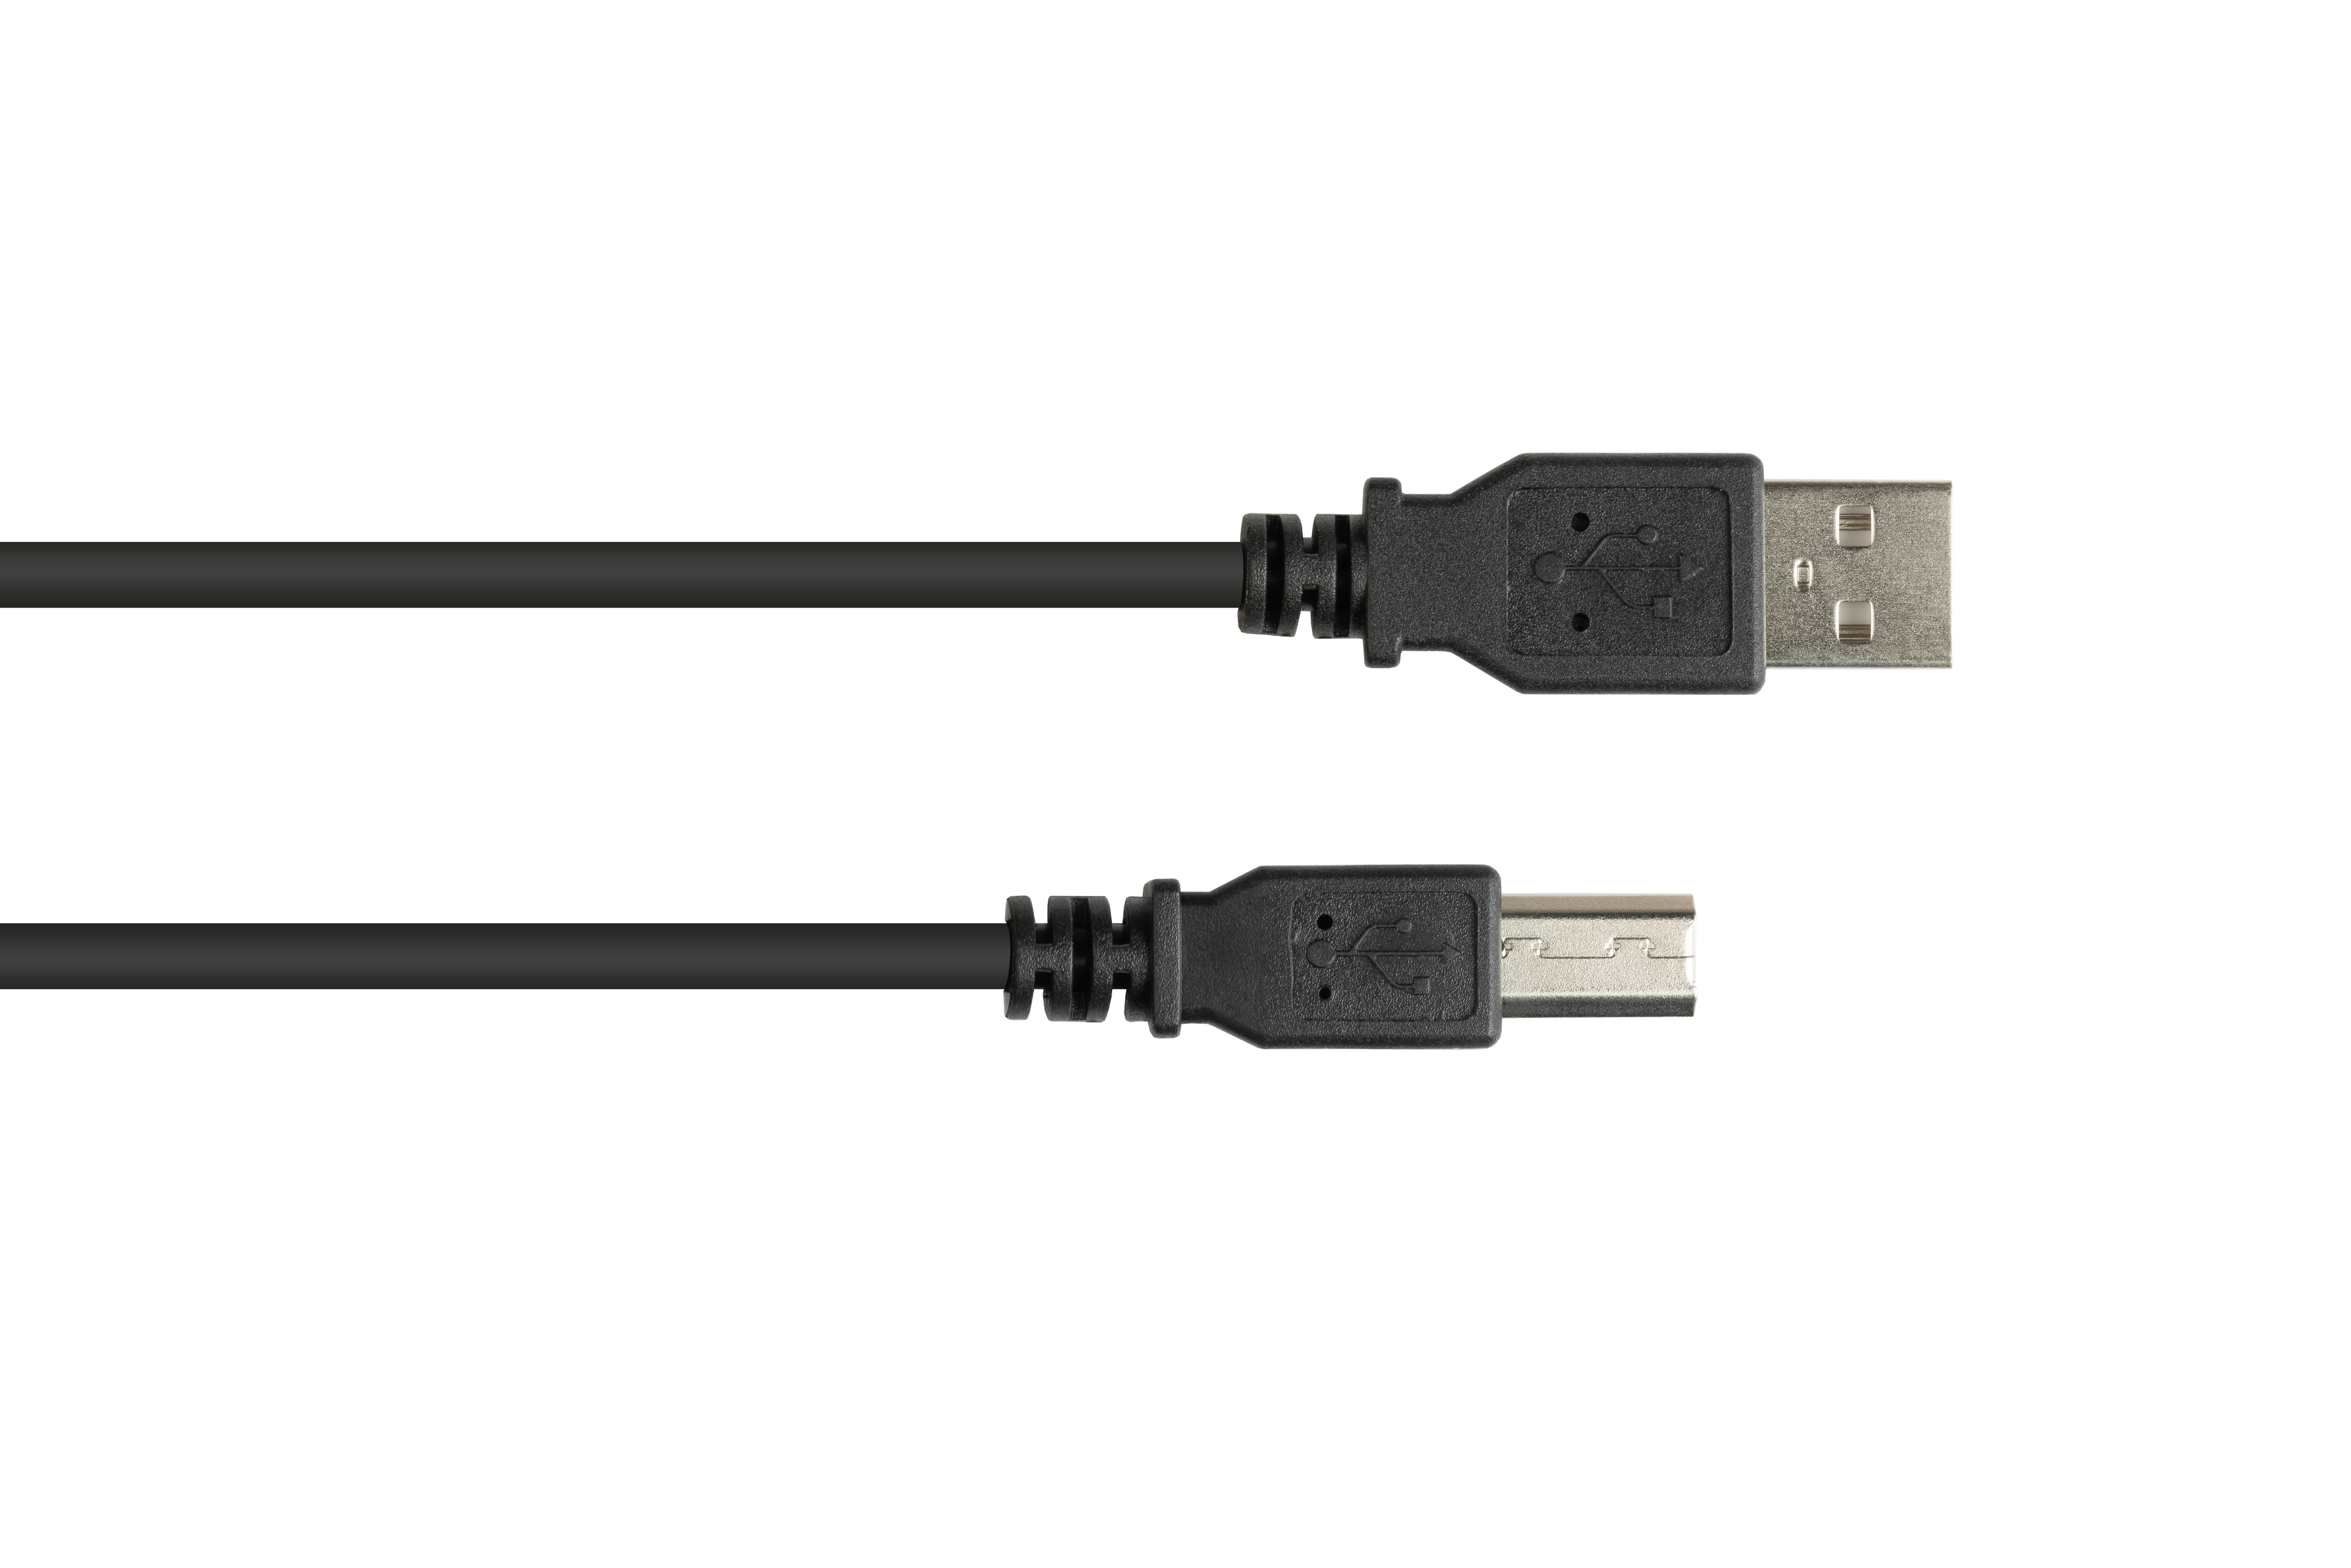 Stecker Anschlusskabel 2.0 EASY schwarz B, A USB Stecker an KABELMEISTER